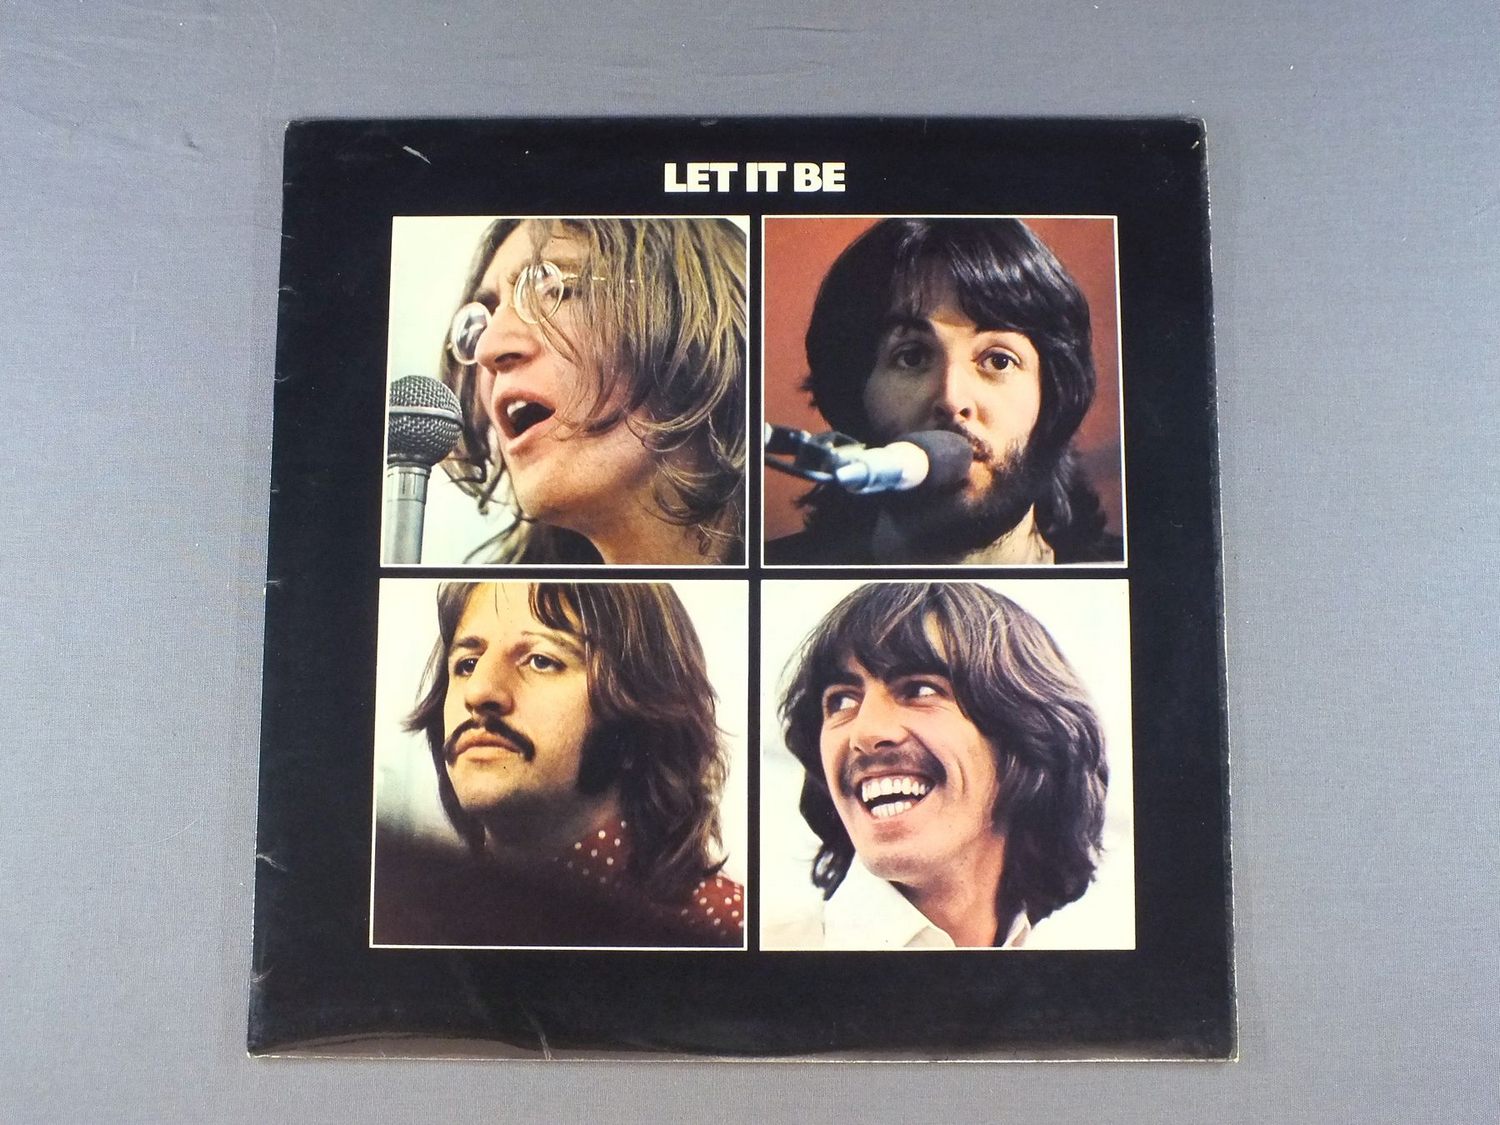 Лет ит би слушать. Битлз 1970 Let it be. Обложка альбома Битлз Let it be. The Beatles Let it be 1970 обложка. Битлз 1970 Let it be в студии.